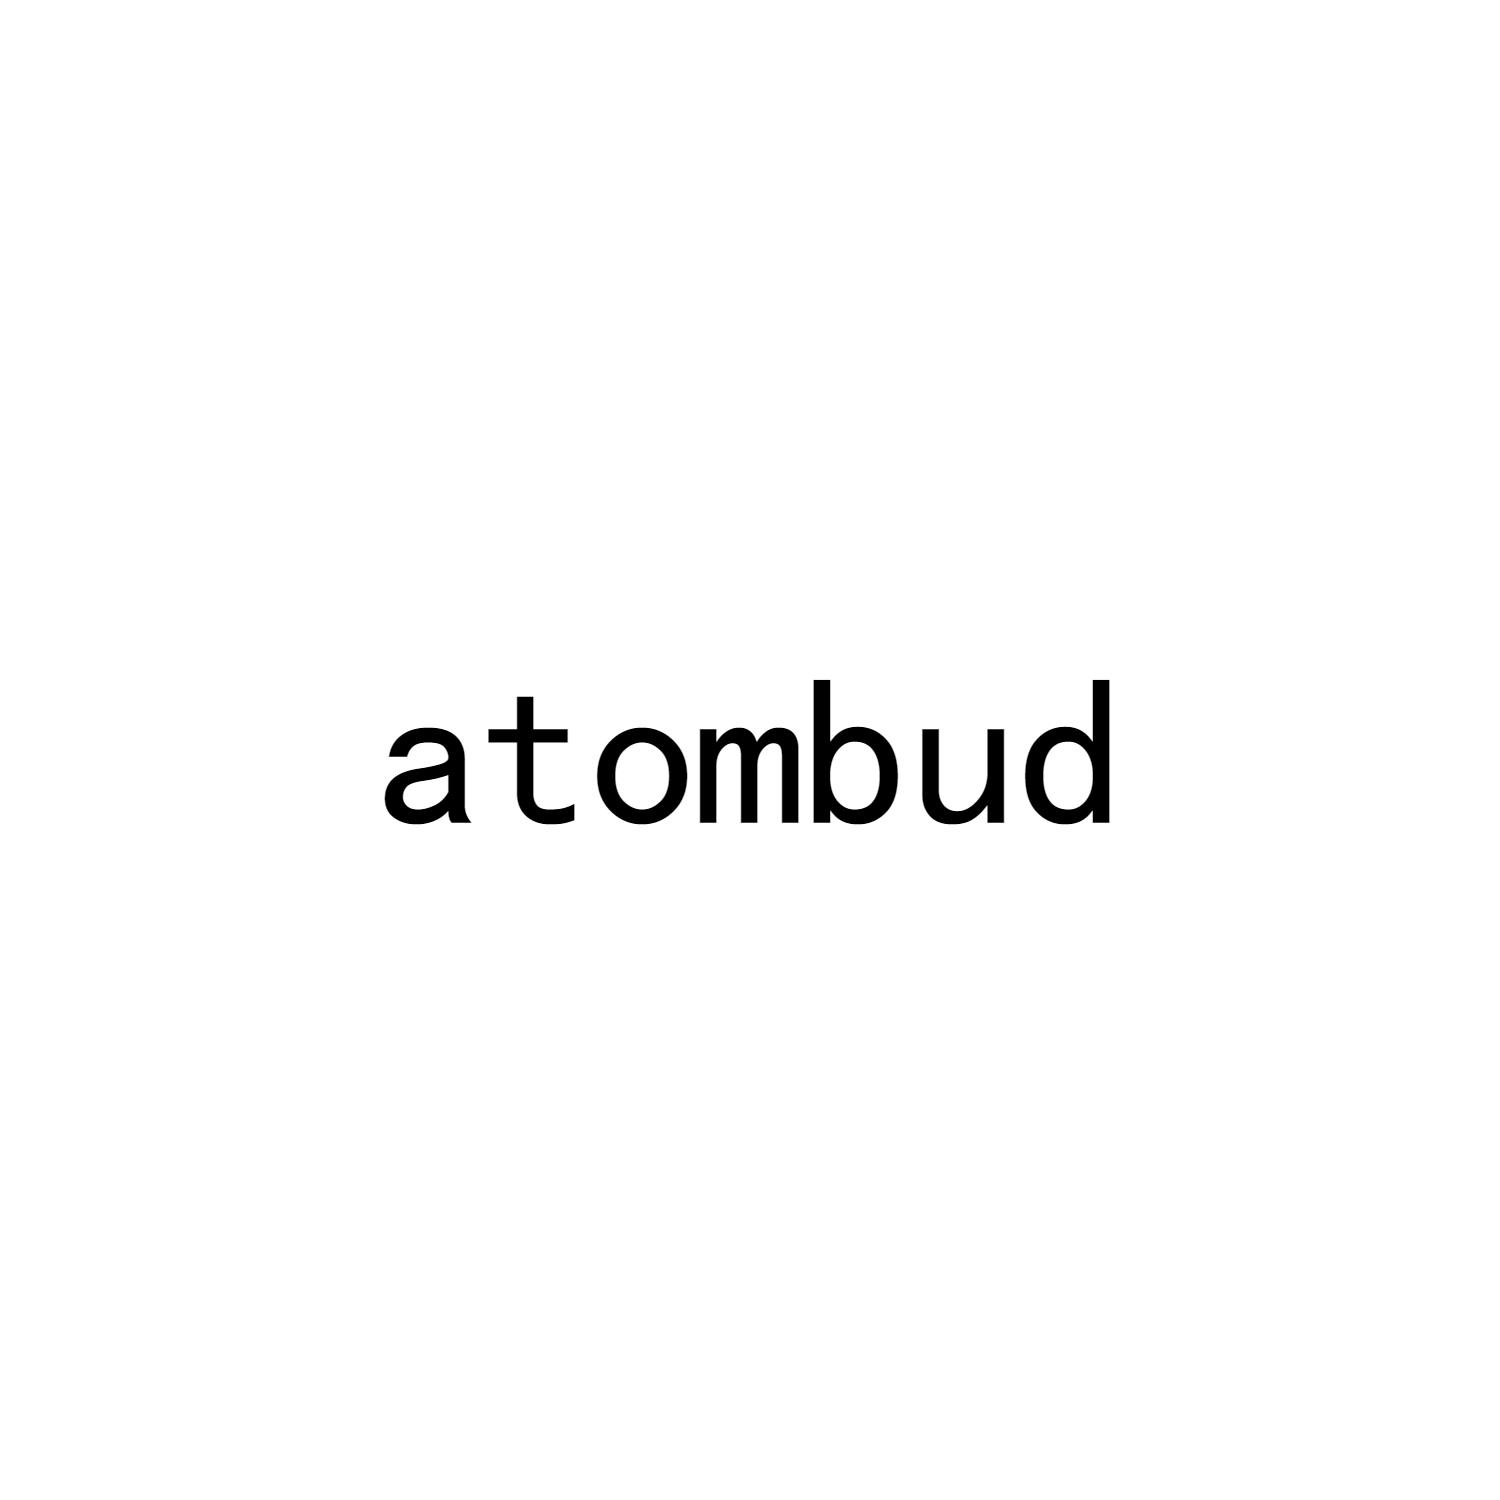 ATOMBUD